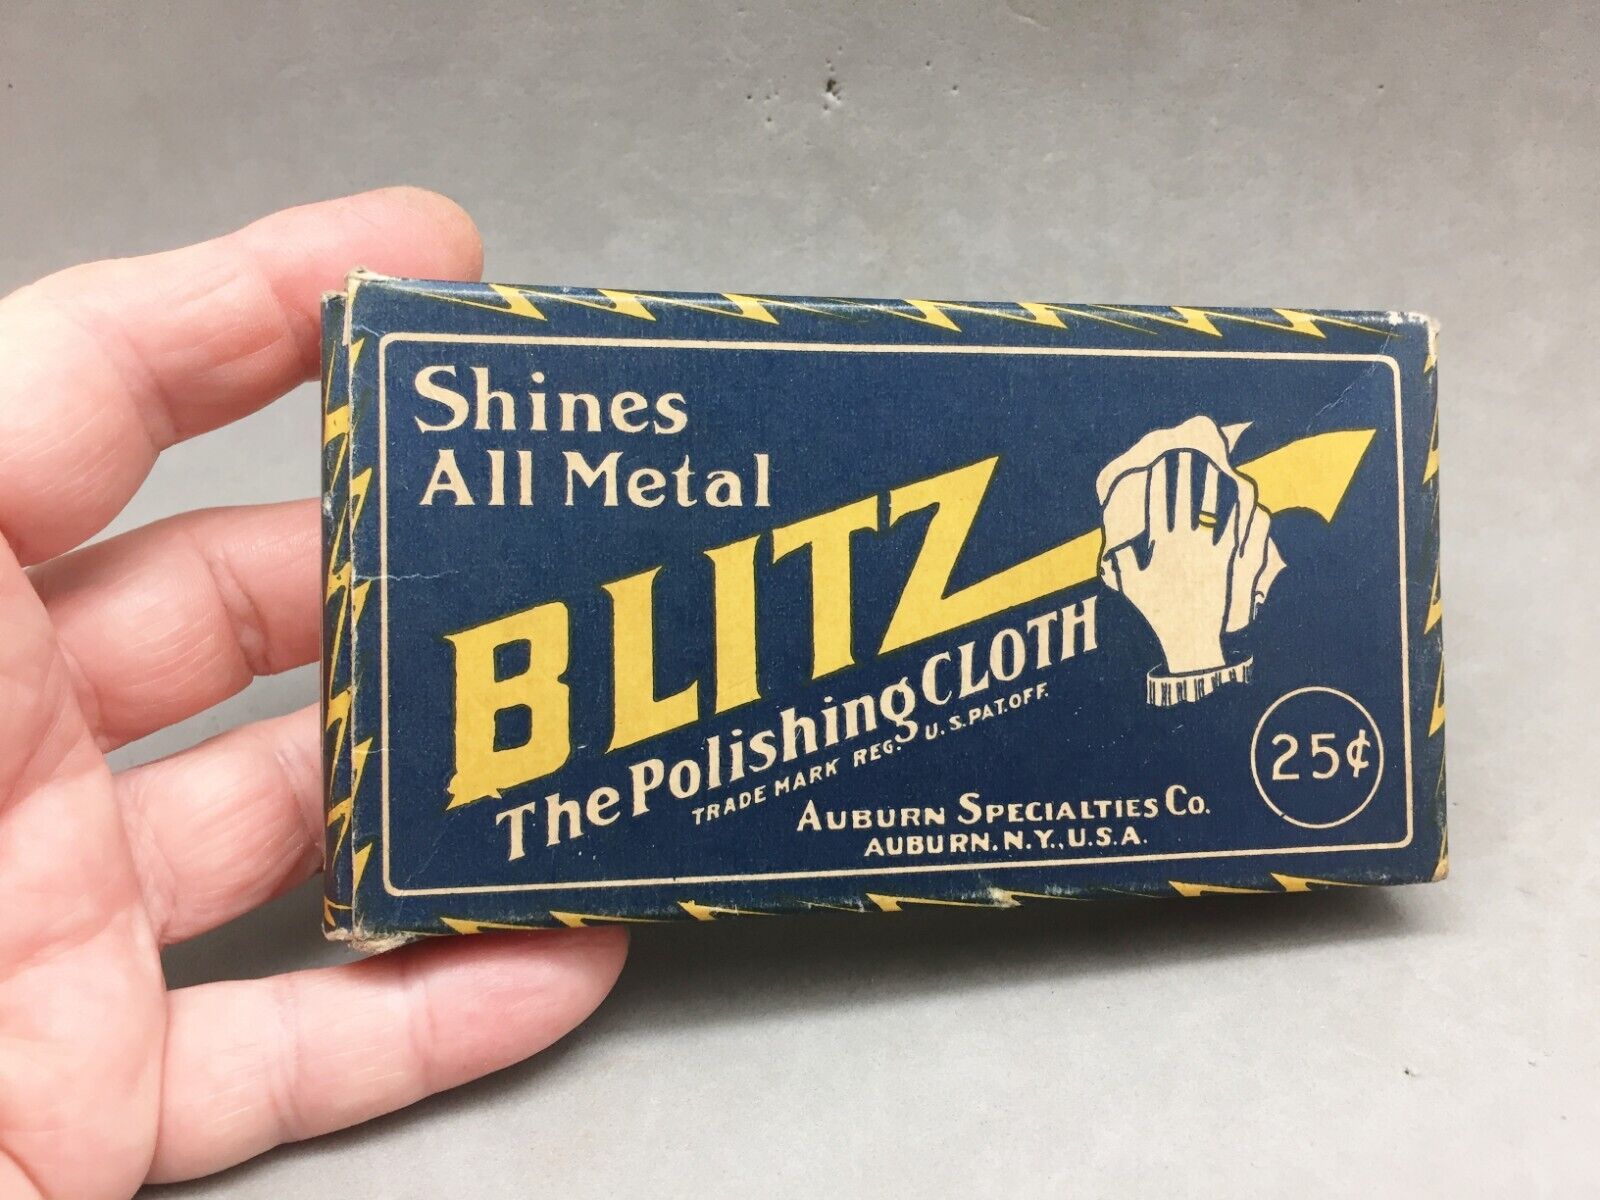 Blitz Polishing Cloth Auburn Specialties NY Vintage Box & Cloth Old New Stock